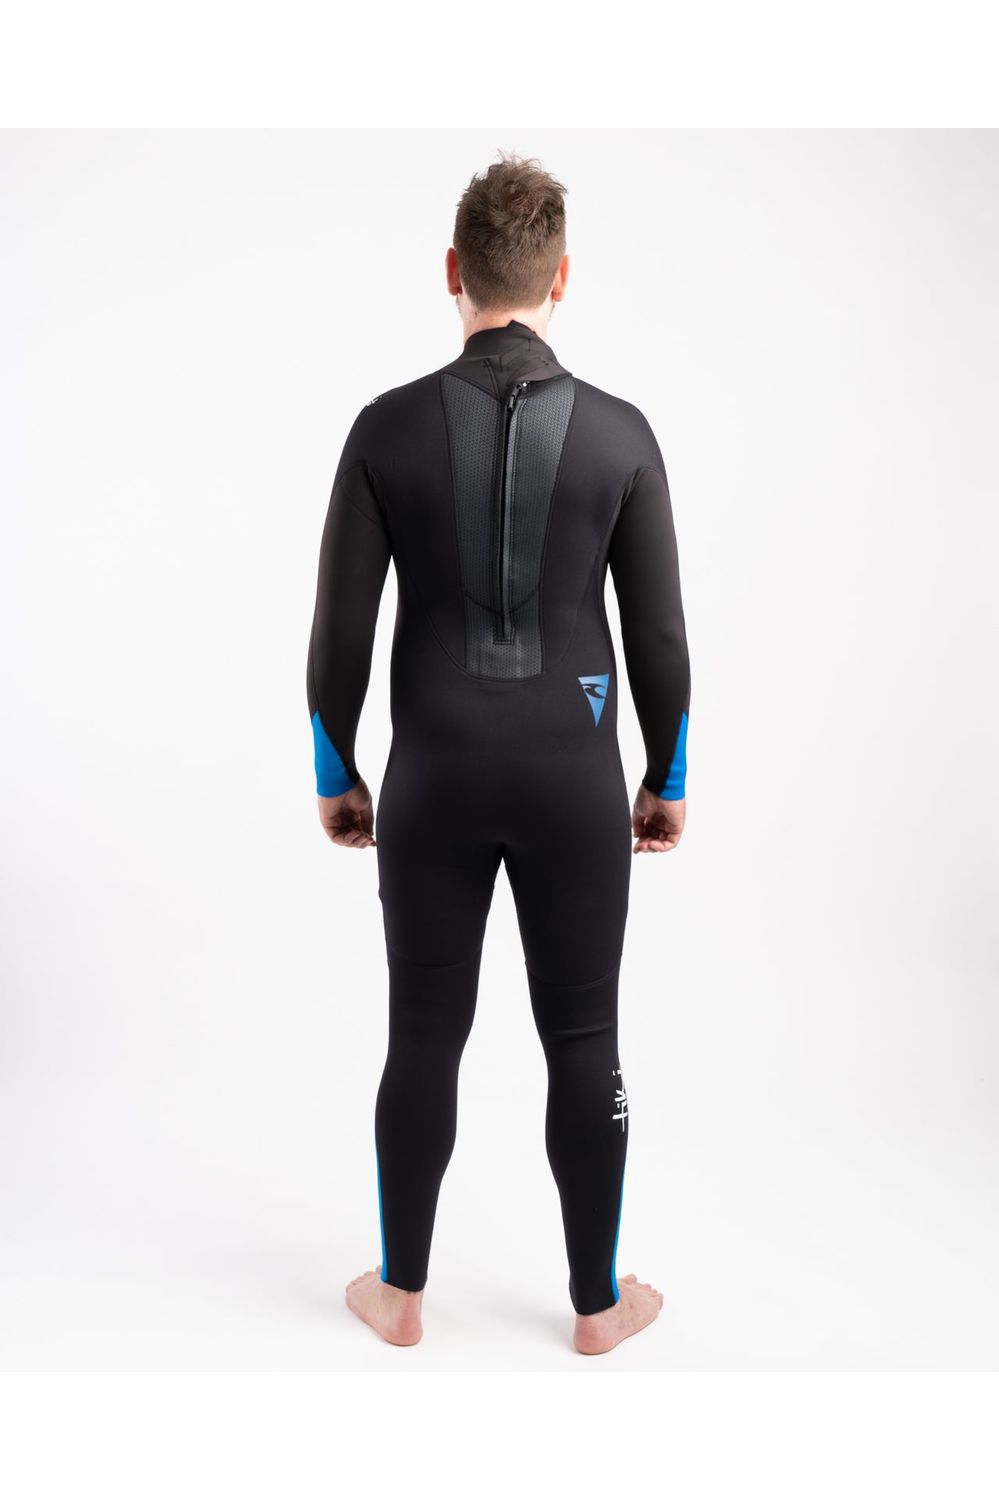 Tiki Tech 3/2 Back Zip Steamer Wetsuit In Black & Blue